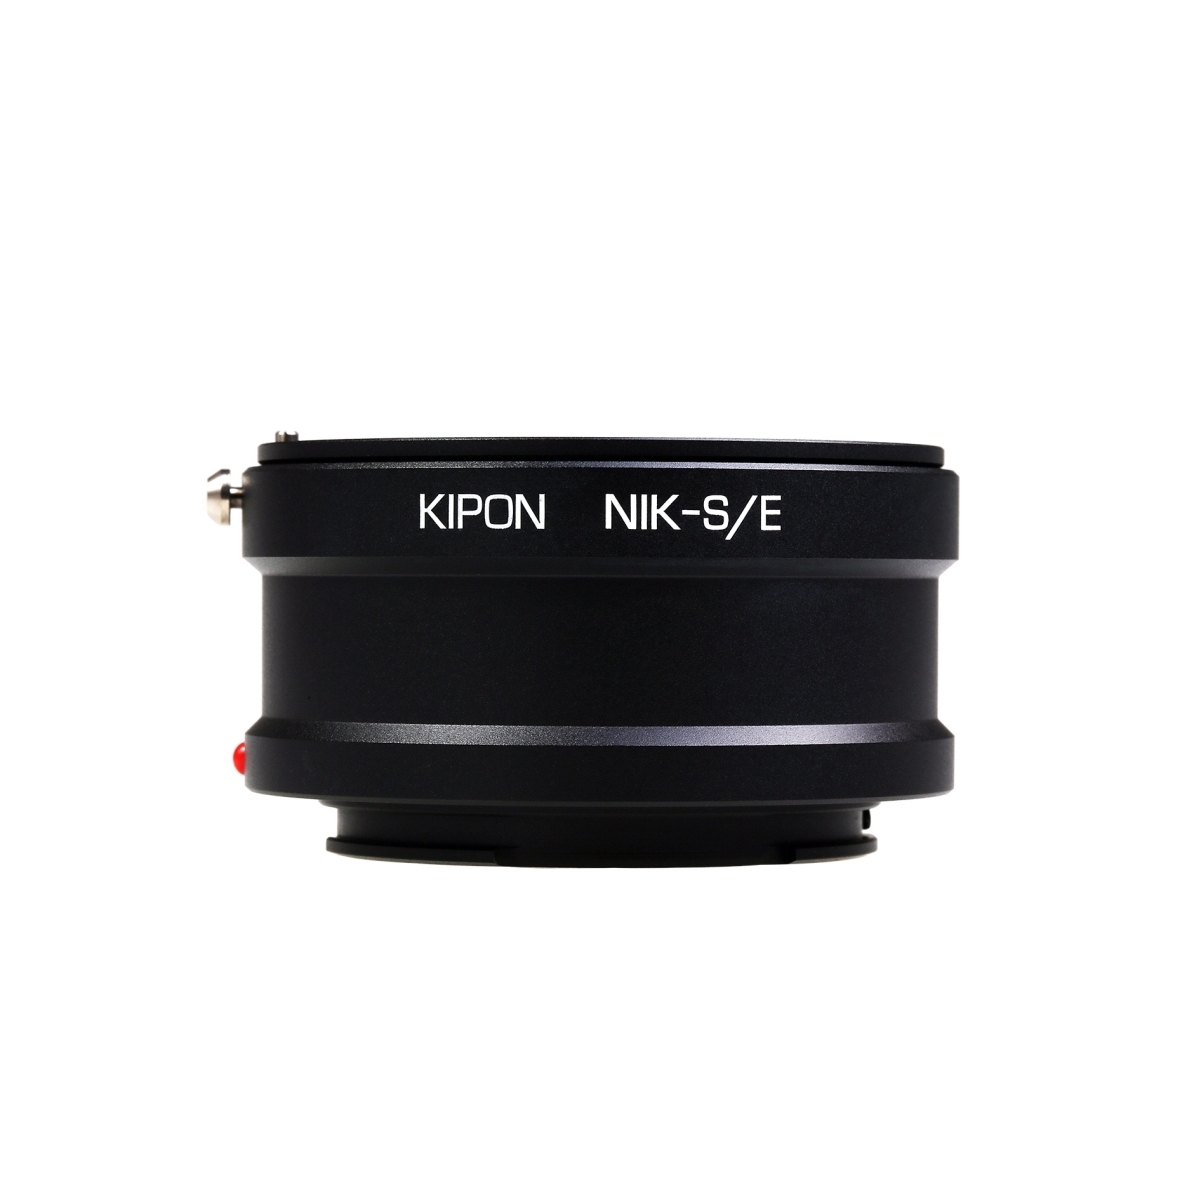 Kipon Adapter Nikon F to Sony E